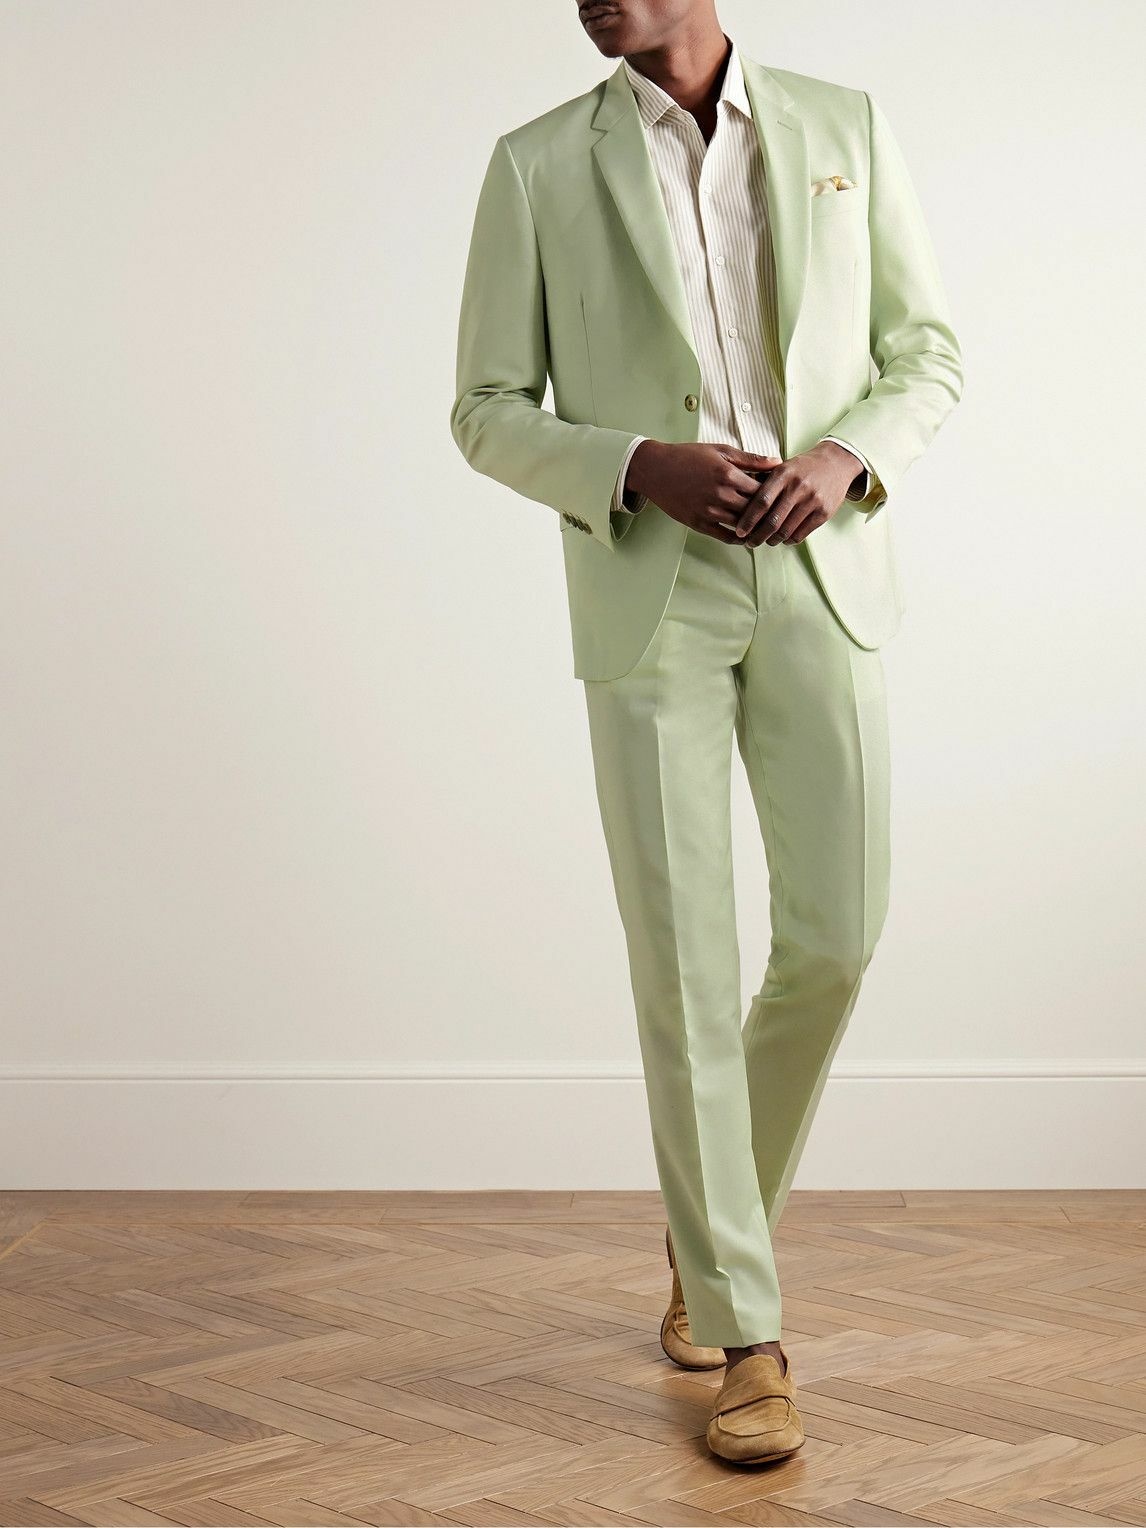 Paul Smith Blazer & Trousers Soho Fit Mens Suit Rust Color Pants & Jacket  Sz 34 | eBay